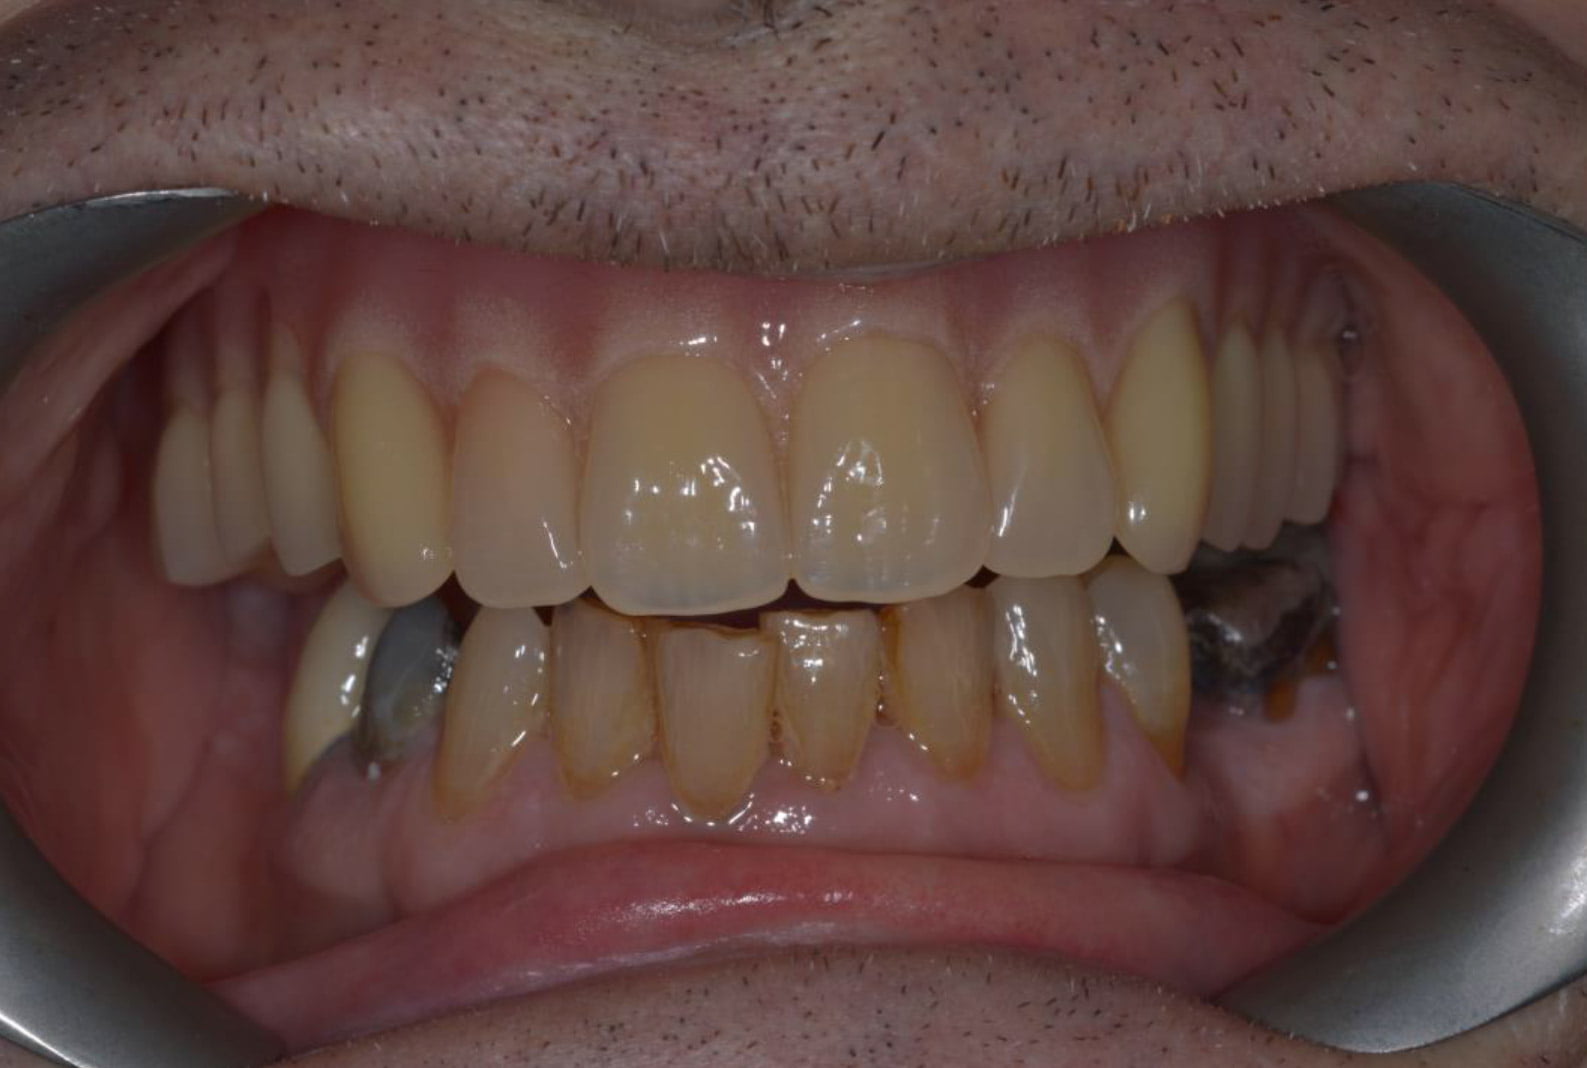 Implant Secured Dentures